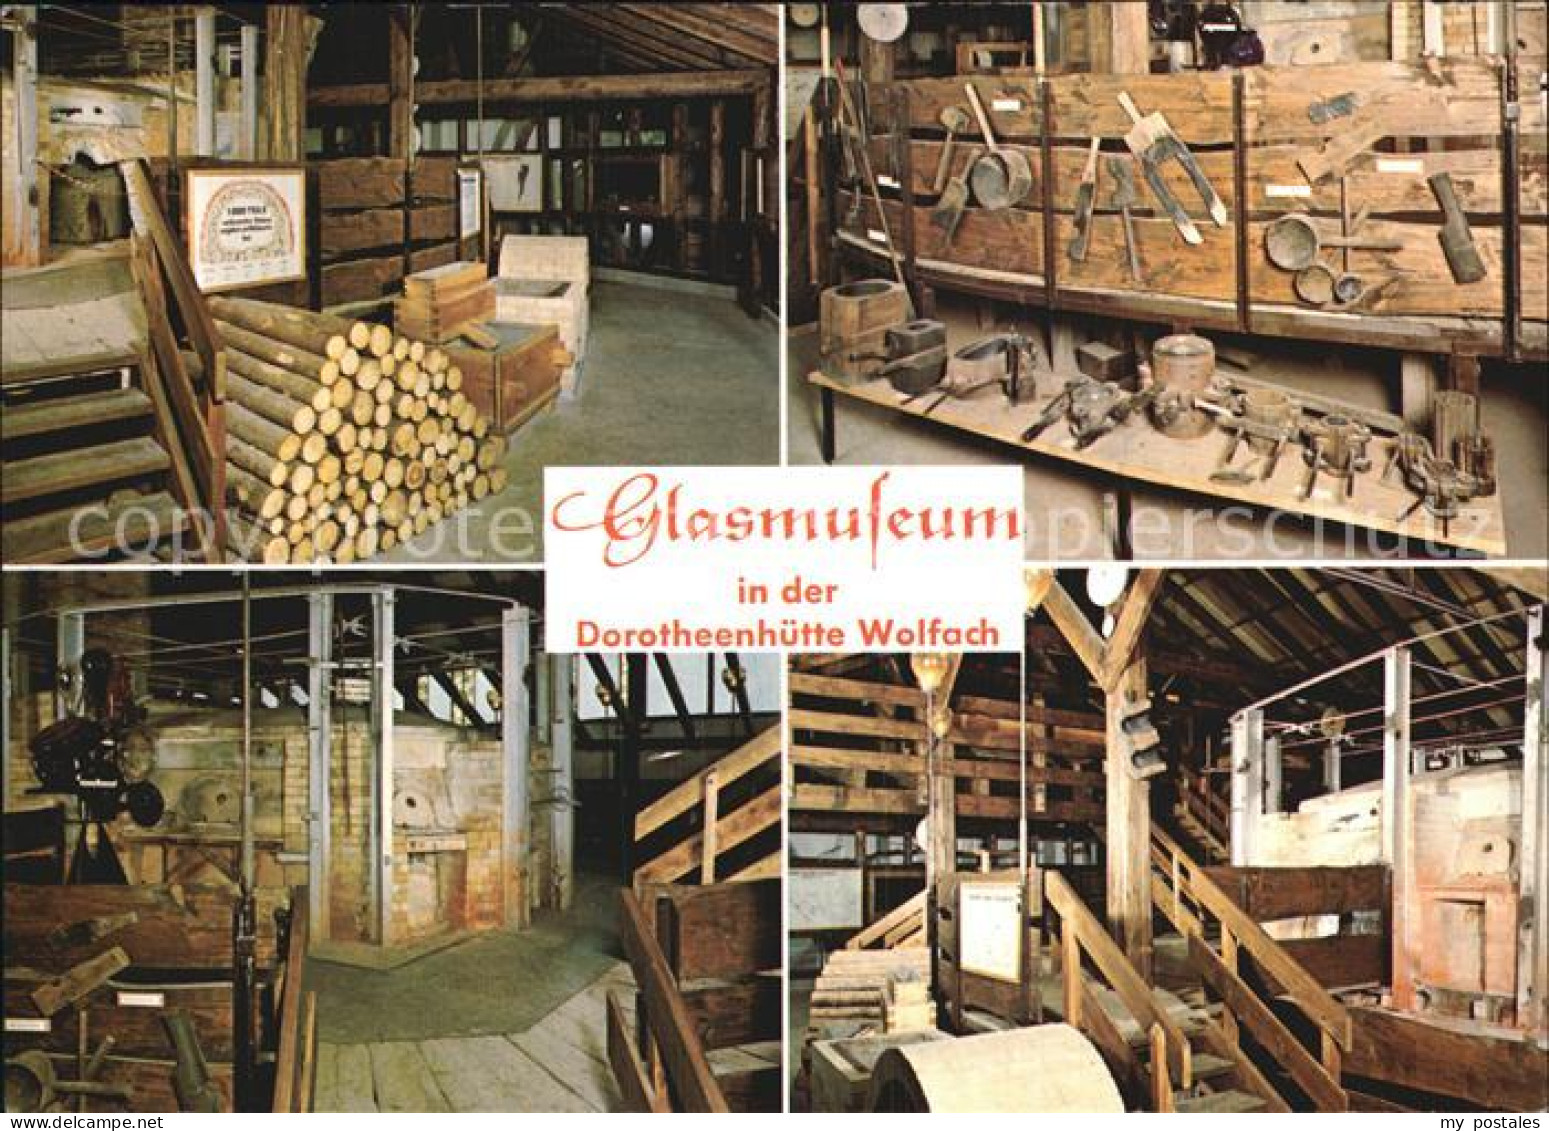 72599489 Wolfach Barthmann Cristall Dorotheenhuette Glasmuseum Wolfach Schwarzwa - Wolfach